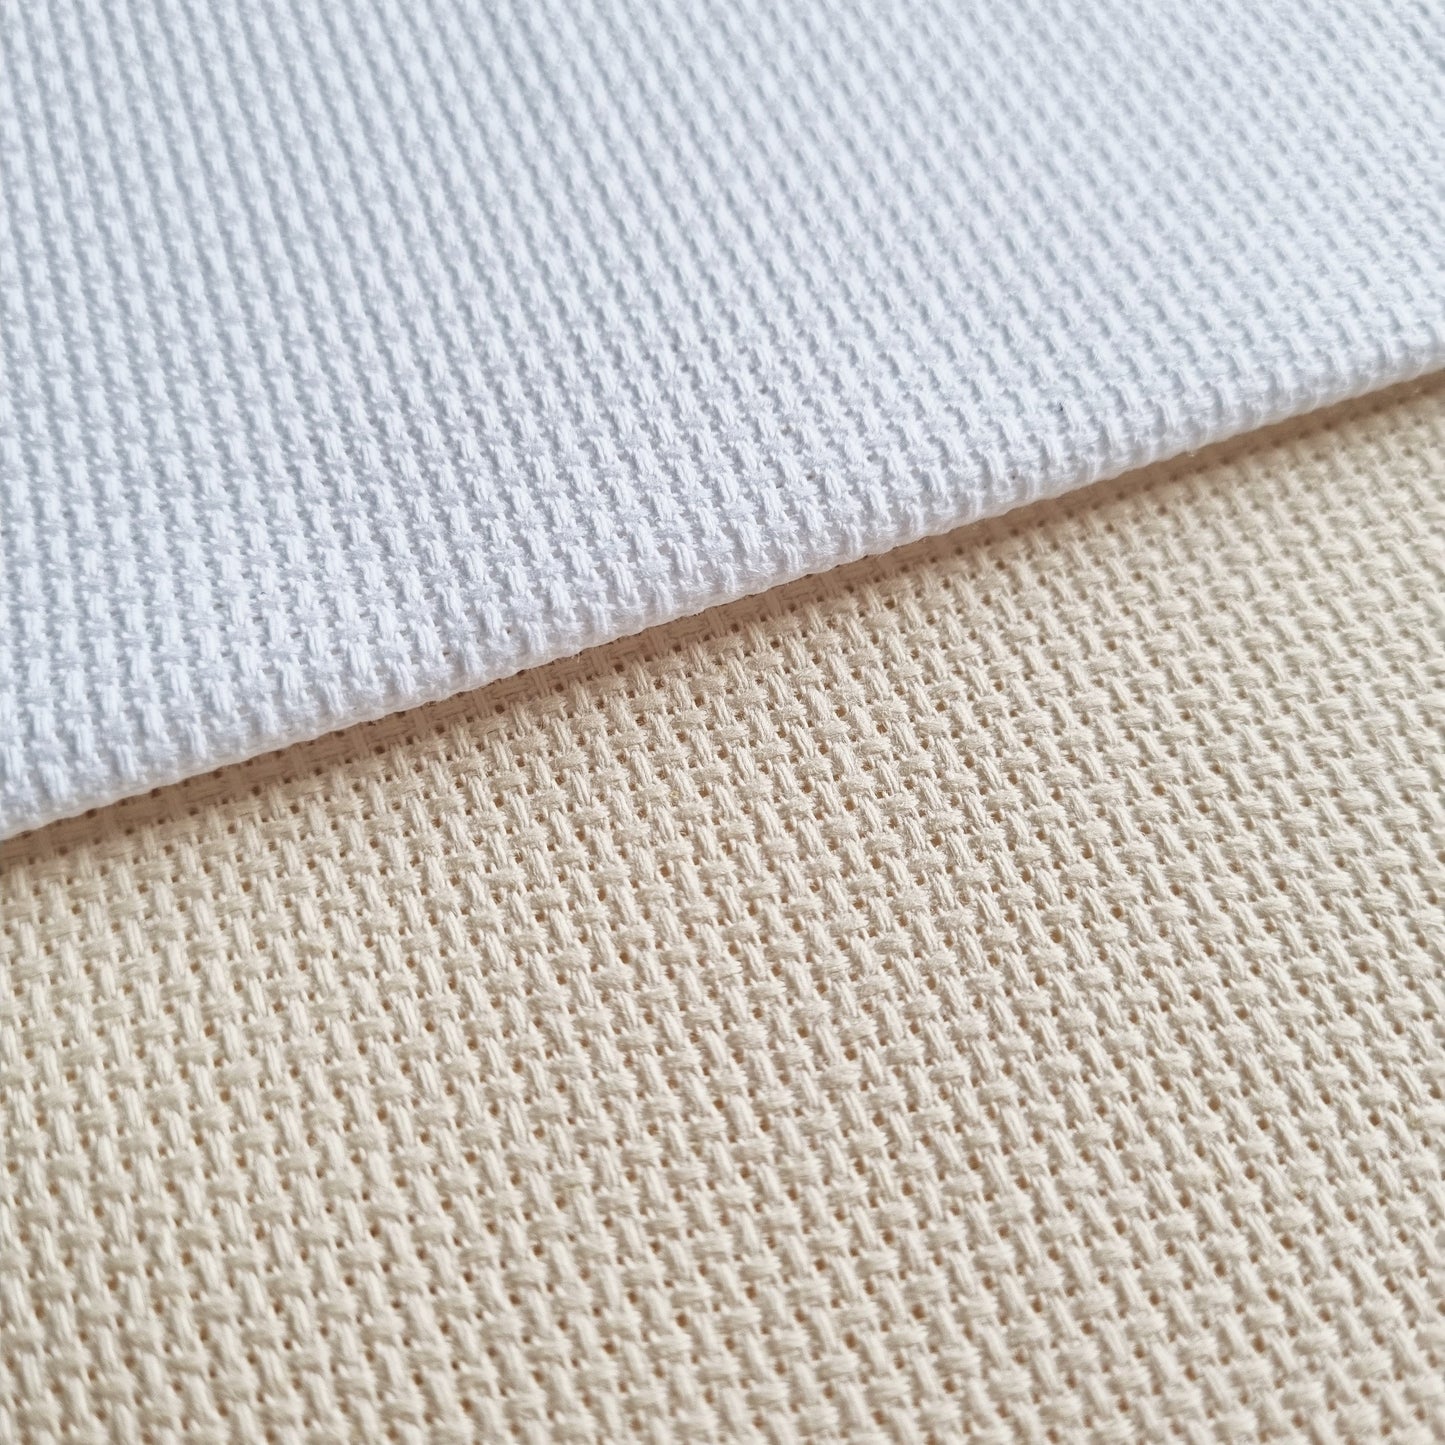 4 Pieces of 14 Count White or Cream Aida Fabric 12 x 18 Inches / 30cm x 45cm